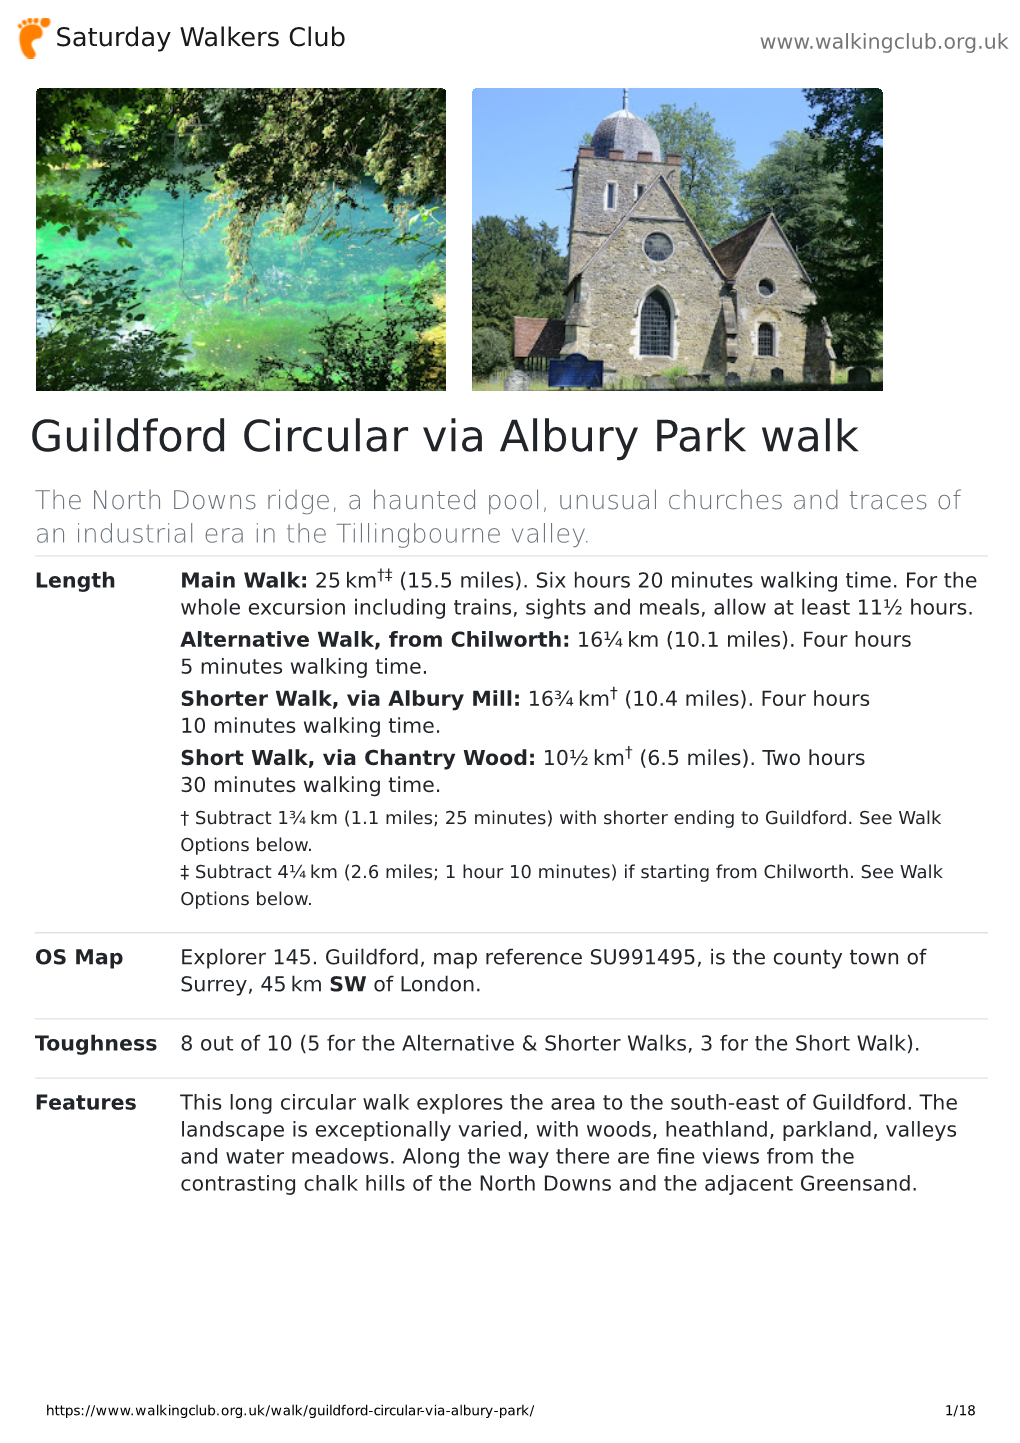 Guildford Circular Via Albury Park Walk